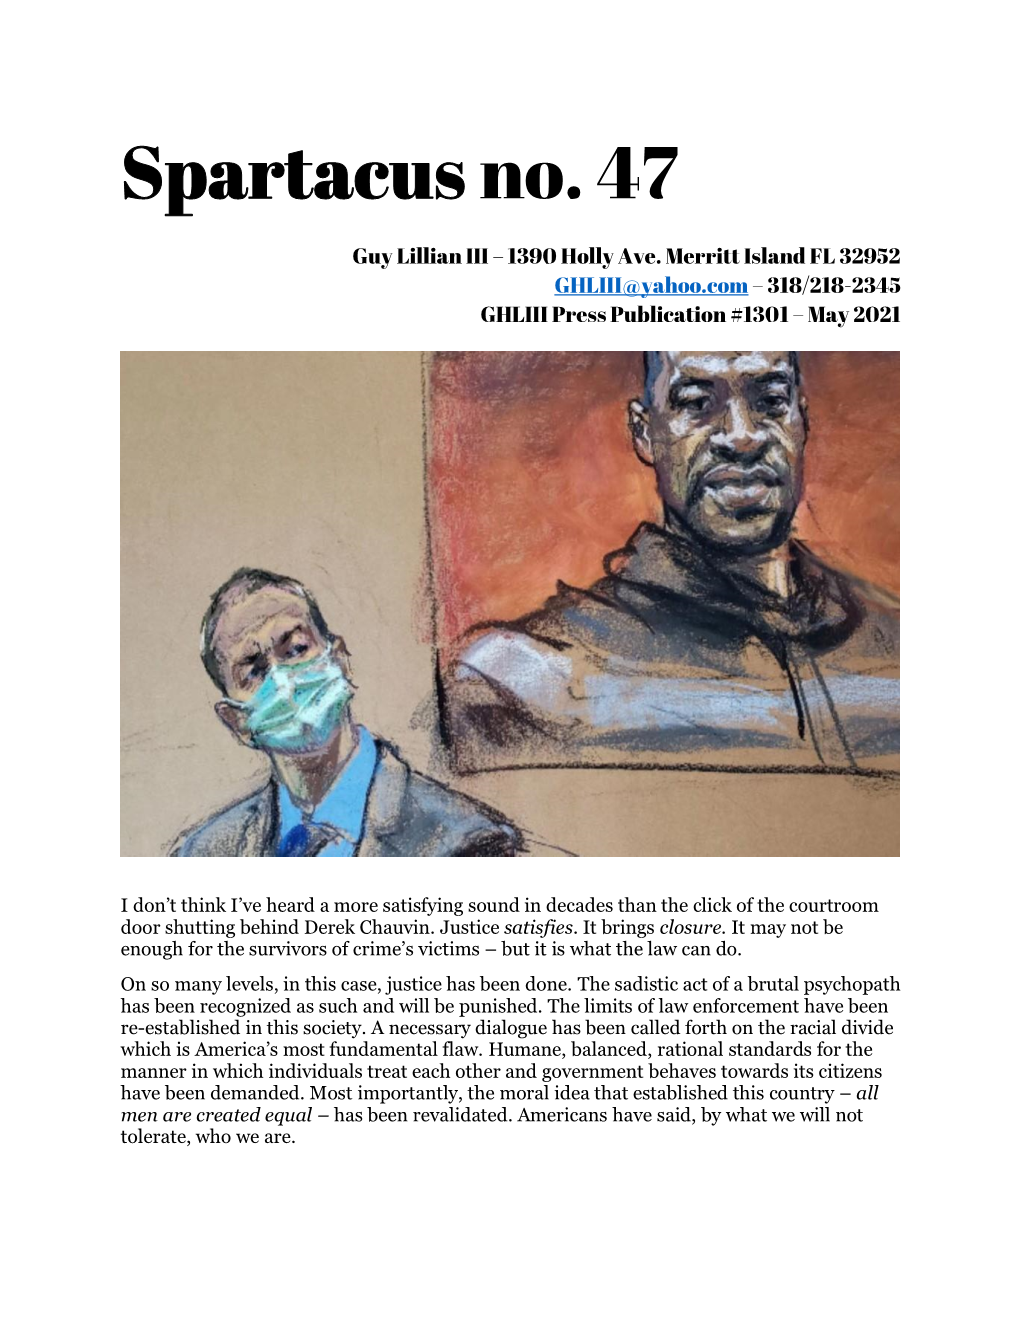 Spartacus No